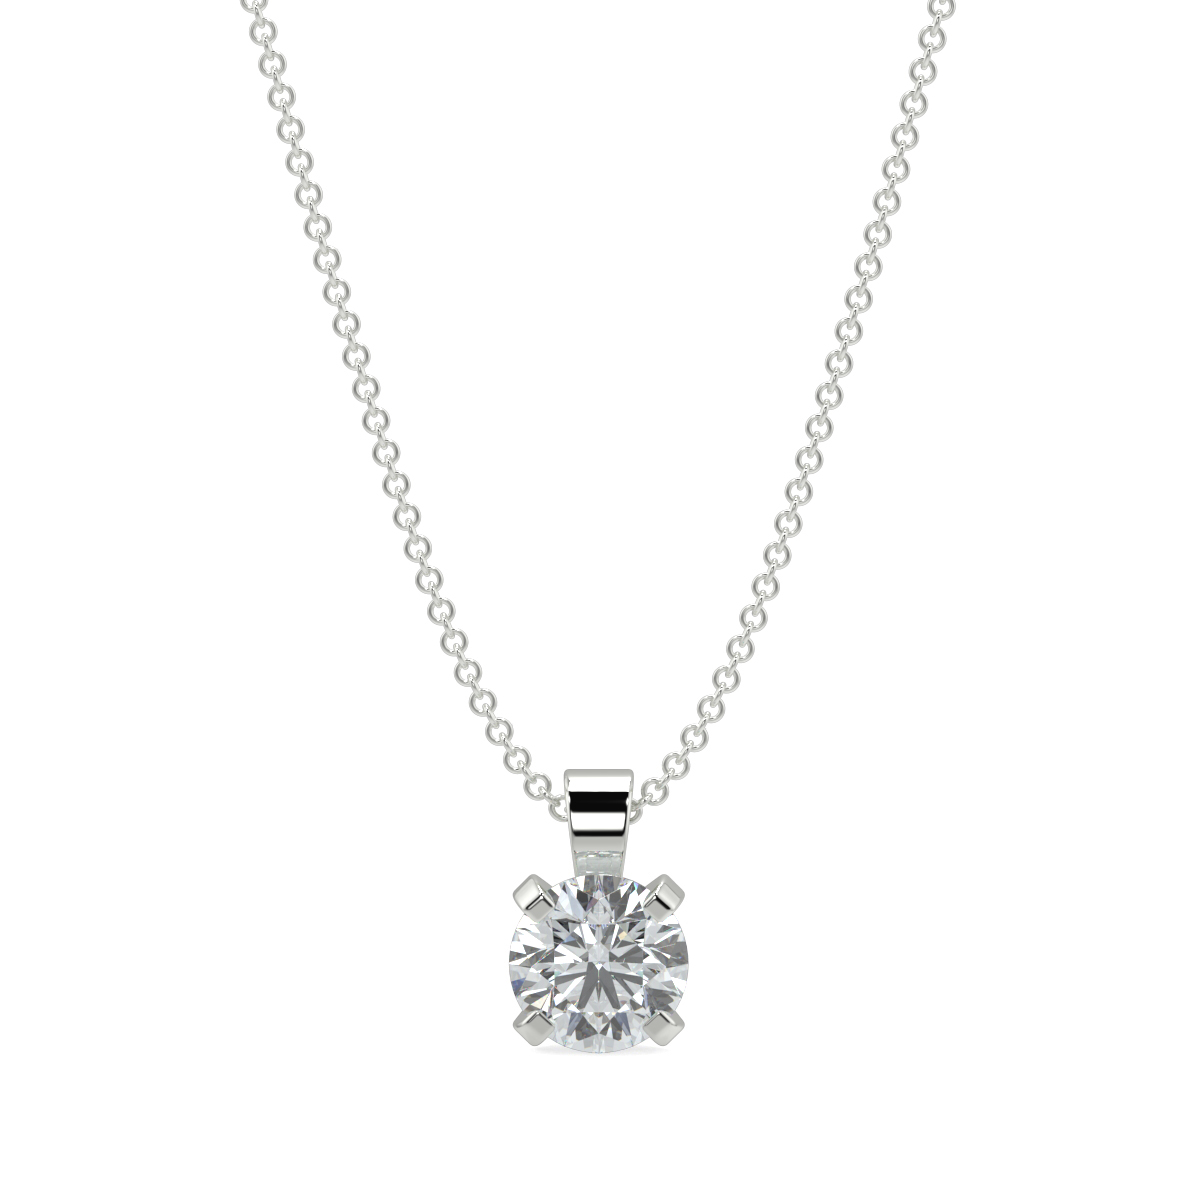 Buy Solitaire Diamond Pendant